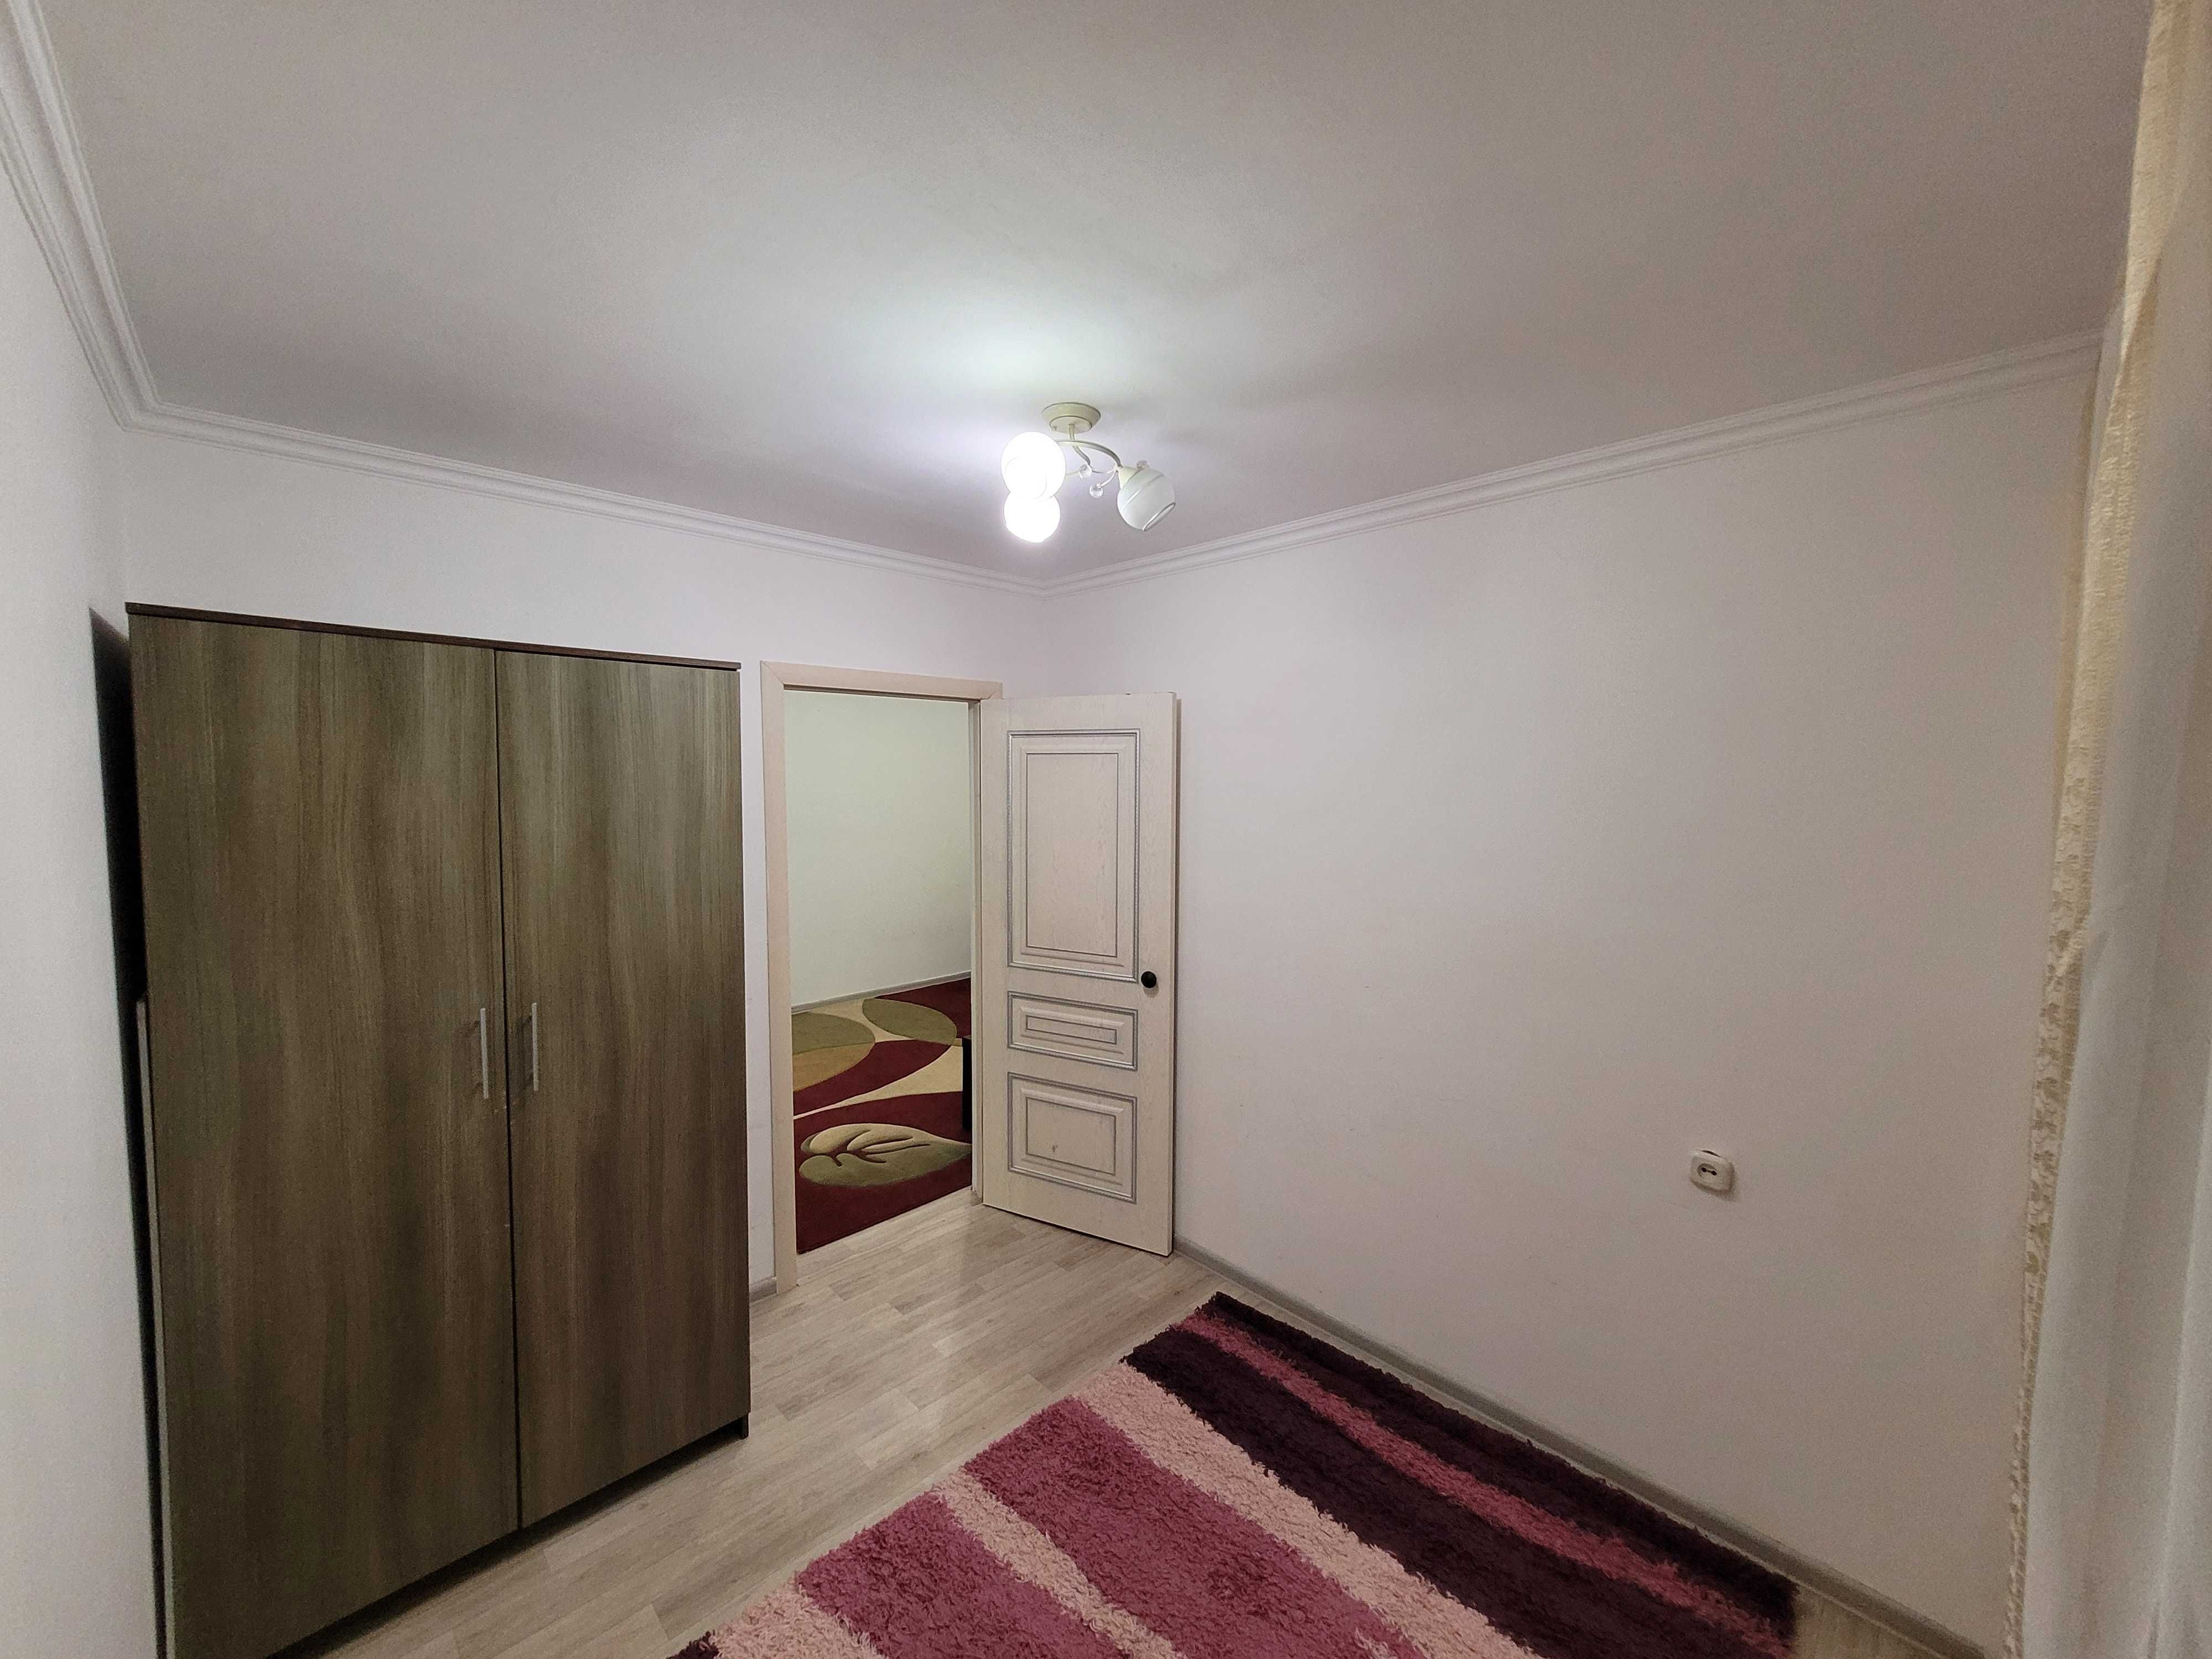 Продам 3-х комнатную квартиру в центре города (район КазИИТУ)